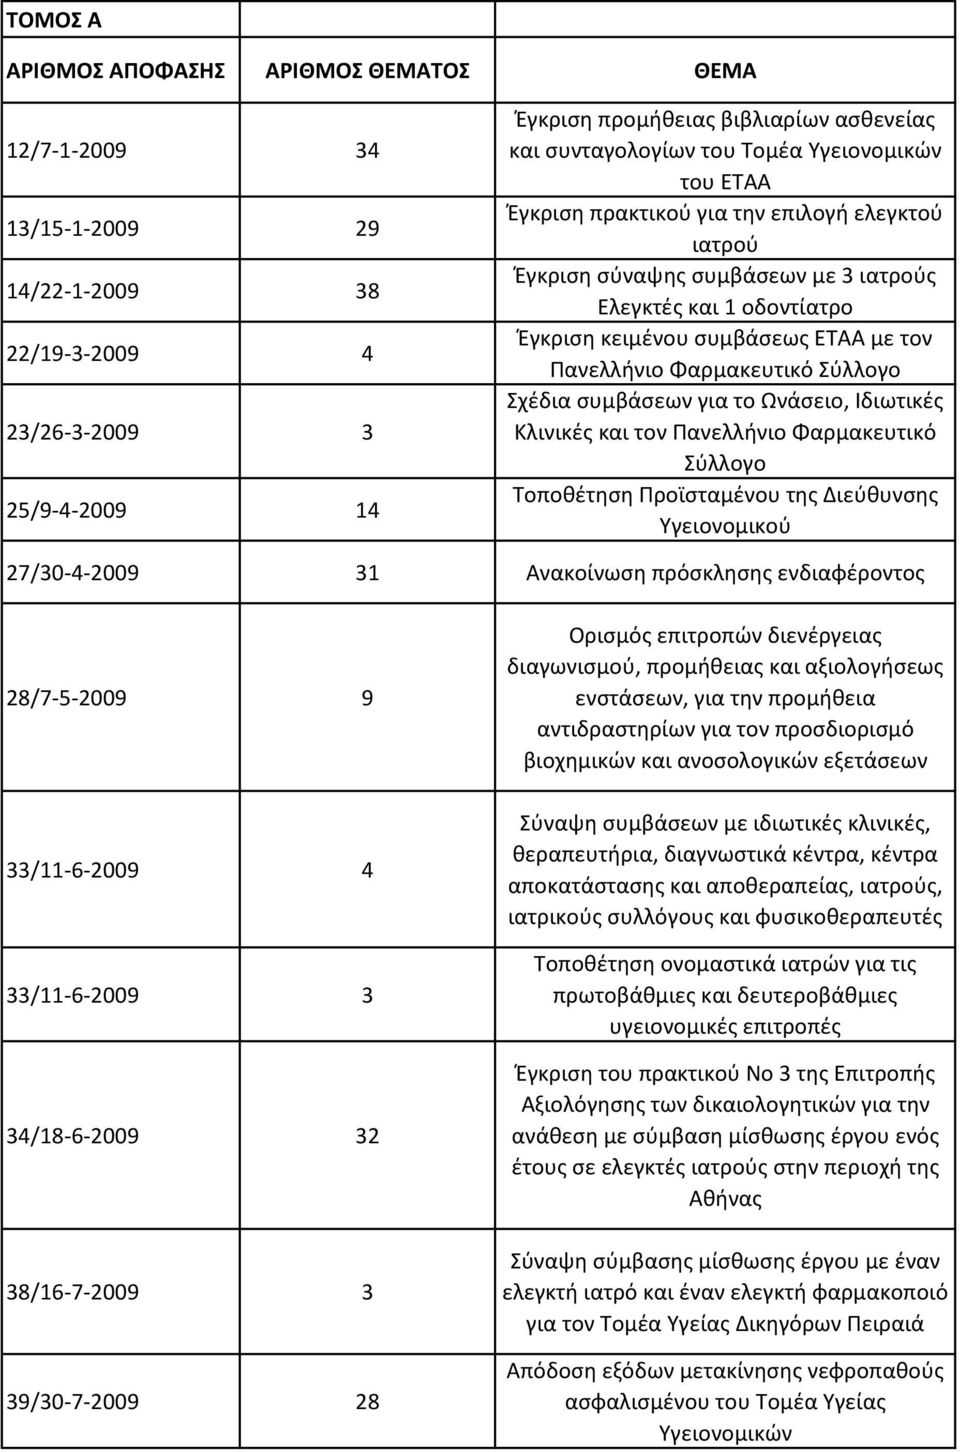 Φαρμακευτικό Σύλλογο Σχέδια συμβάσεων για το Ωνάσειο, Ιδιωτικές Κλινικές και τον Πανελλήνιο Φαρμακευτικό Σύλλογο Τοποθέτηση Προϊσταμένου της Διεύθυνσης Υγειονομικού 27/30-4-2009 31 Ανακοίνωση